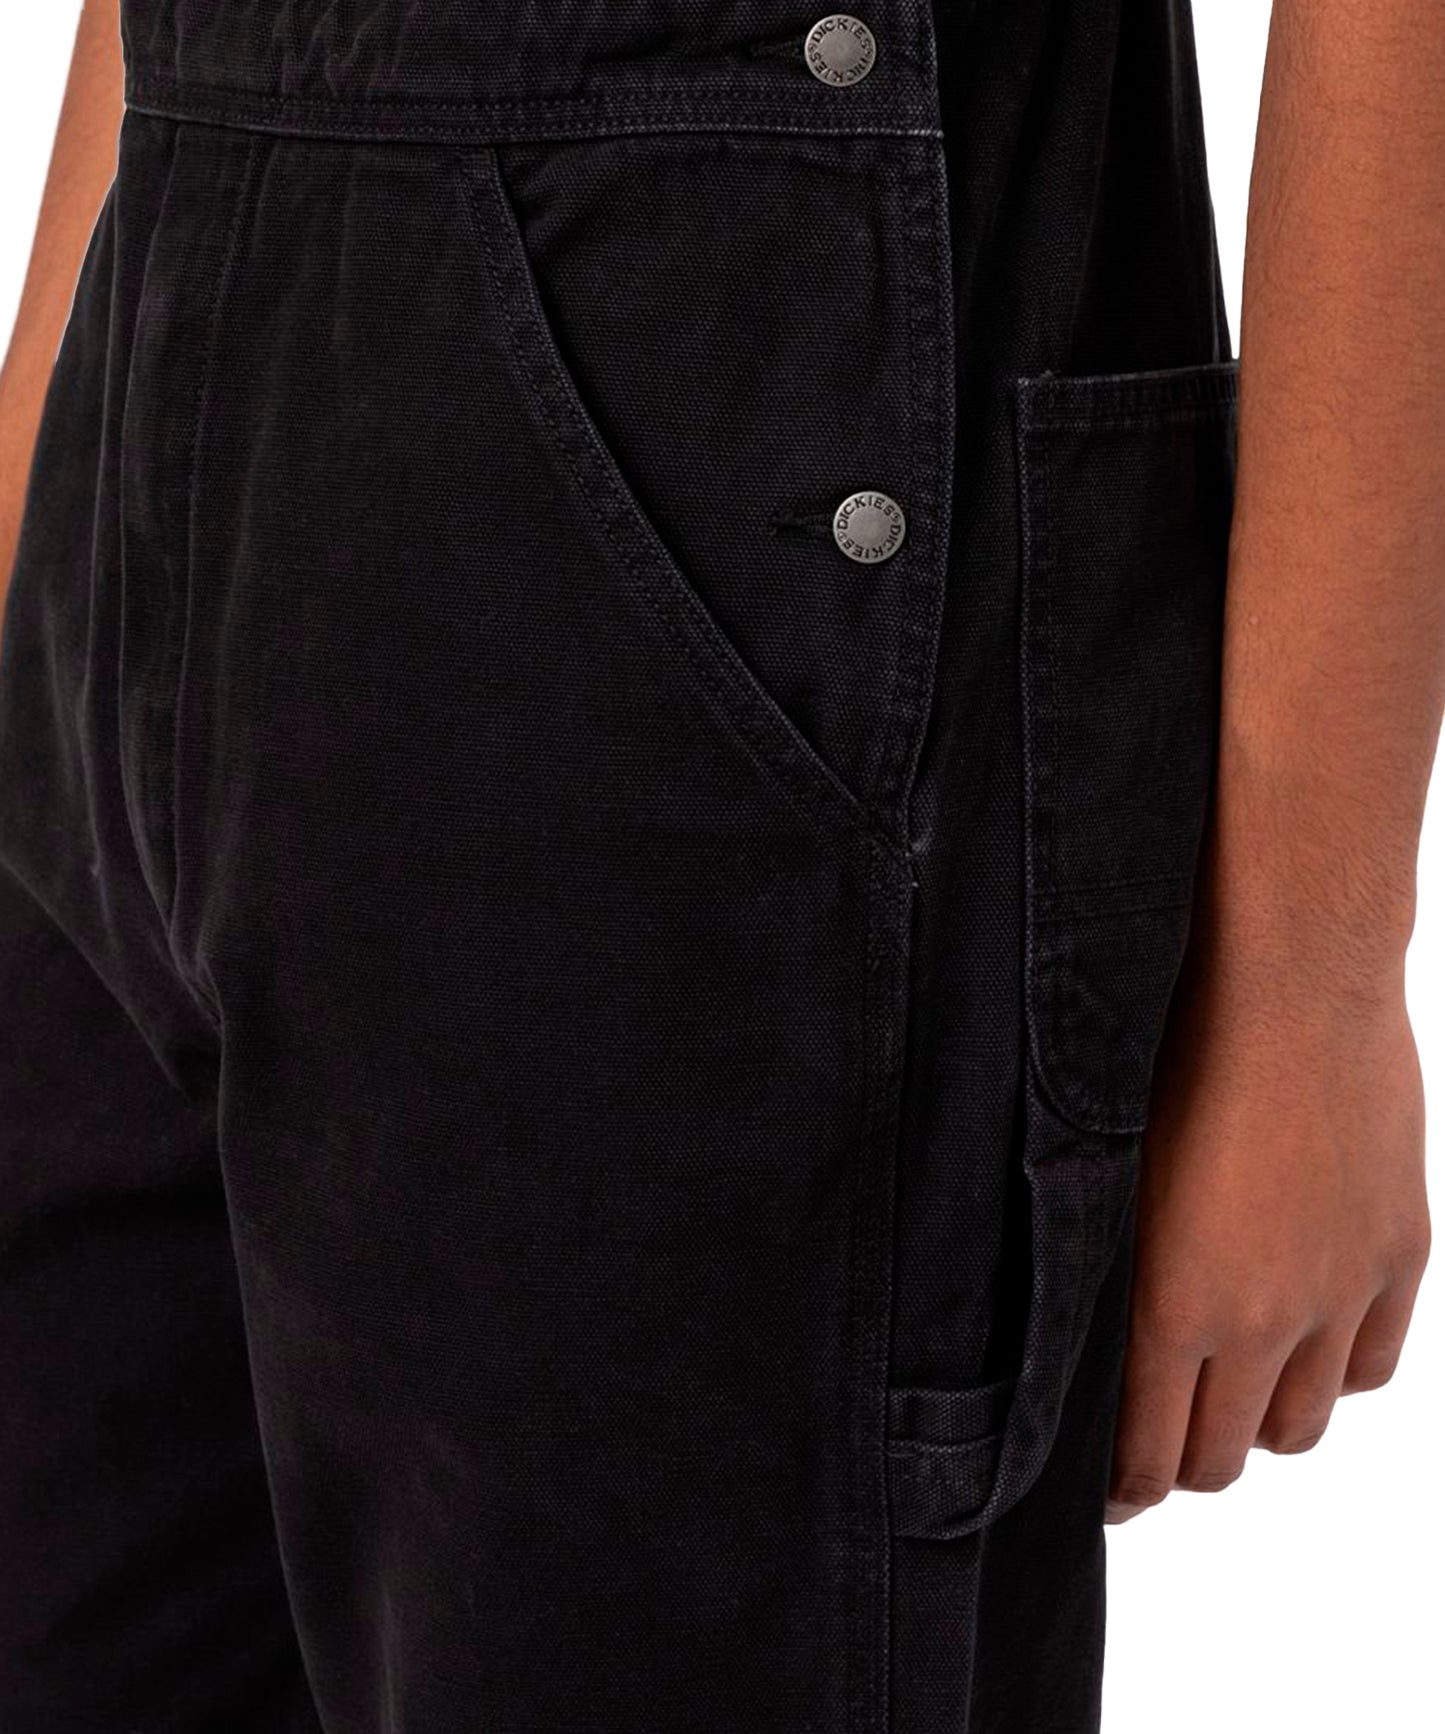 dickies-pantalón-peto-duck-canvas-classic-de corte recto-color-negro-para-un-look-informal-calidad-dickies.